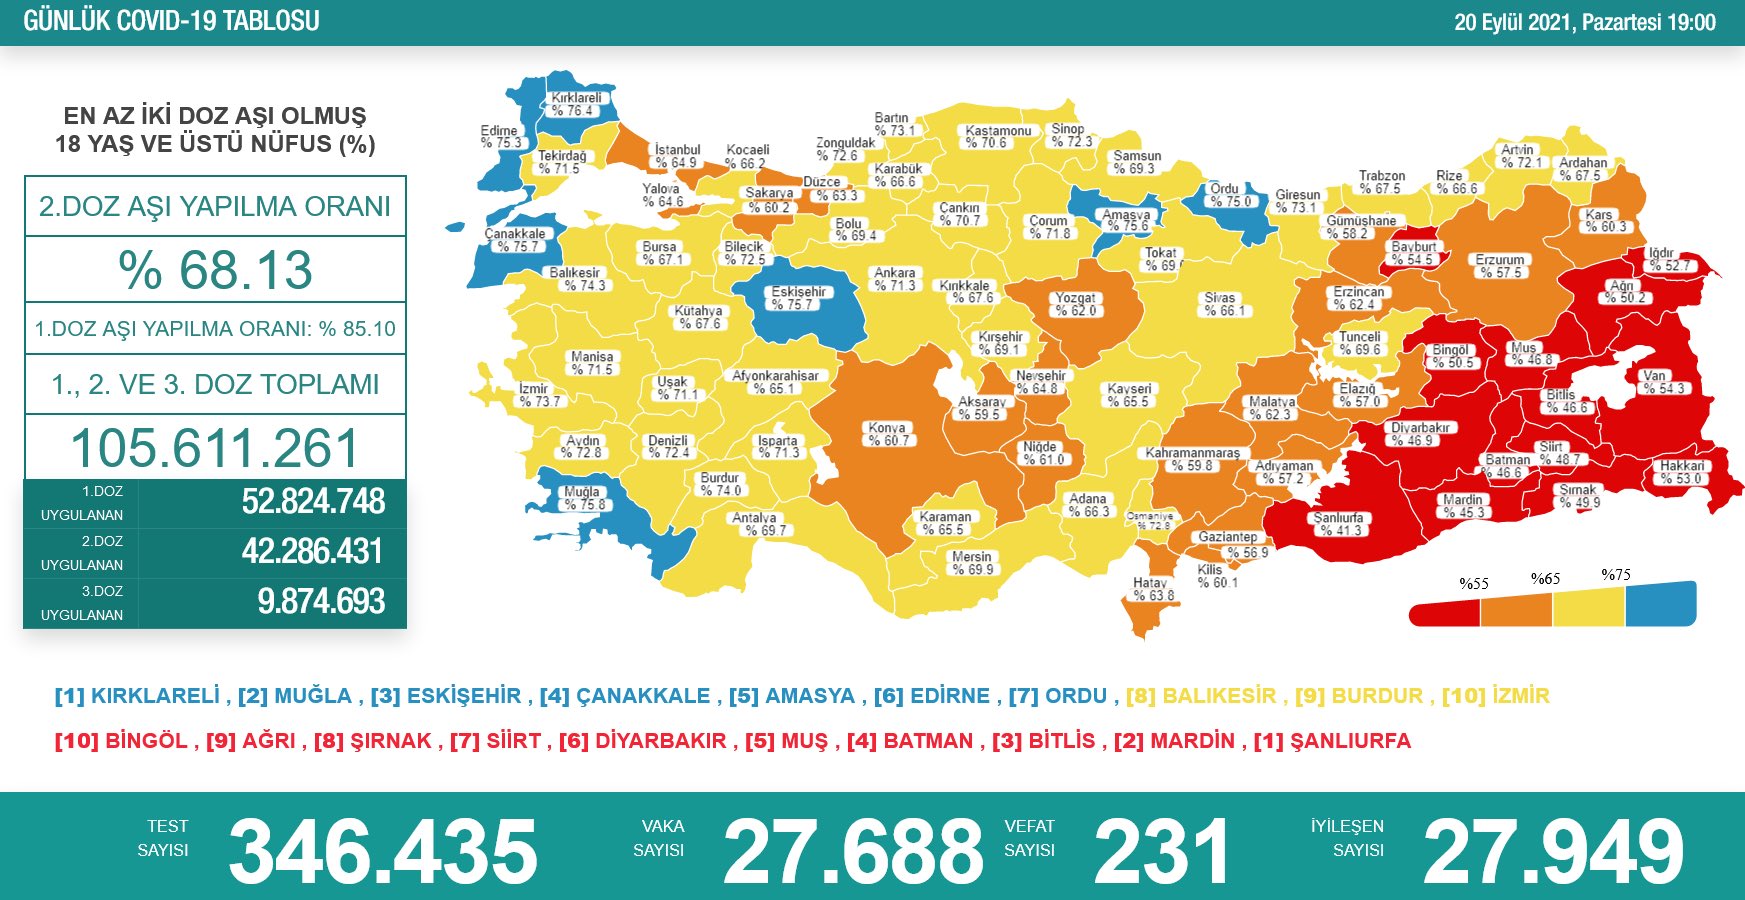 20 Eylül 2021 Türkiye Koronavirüs Tablosu Açıkladı